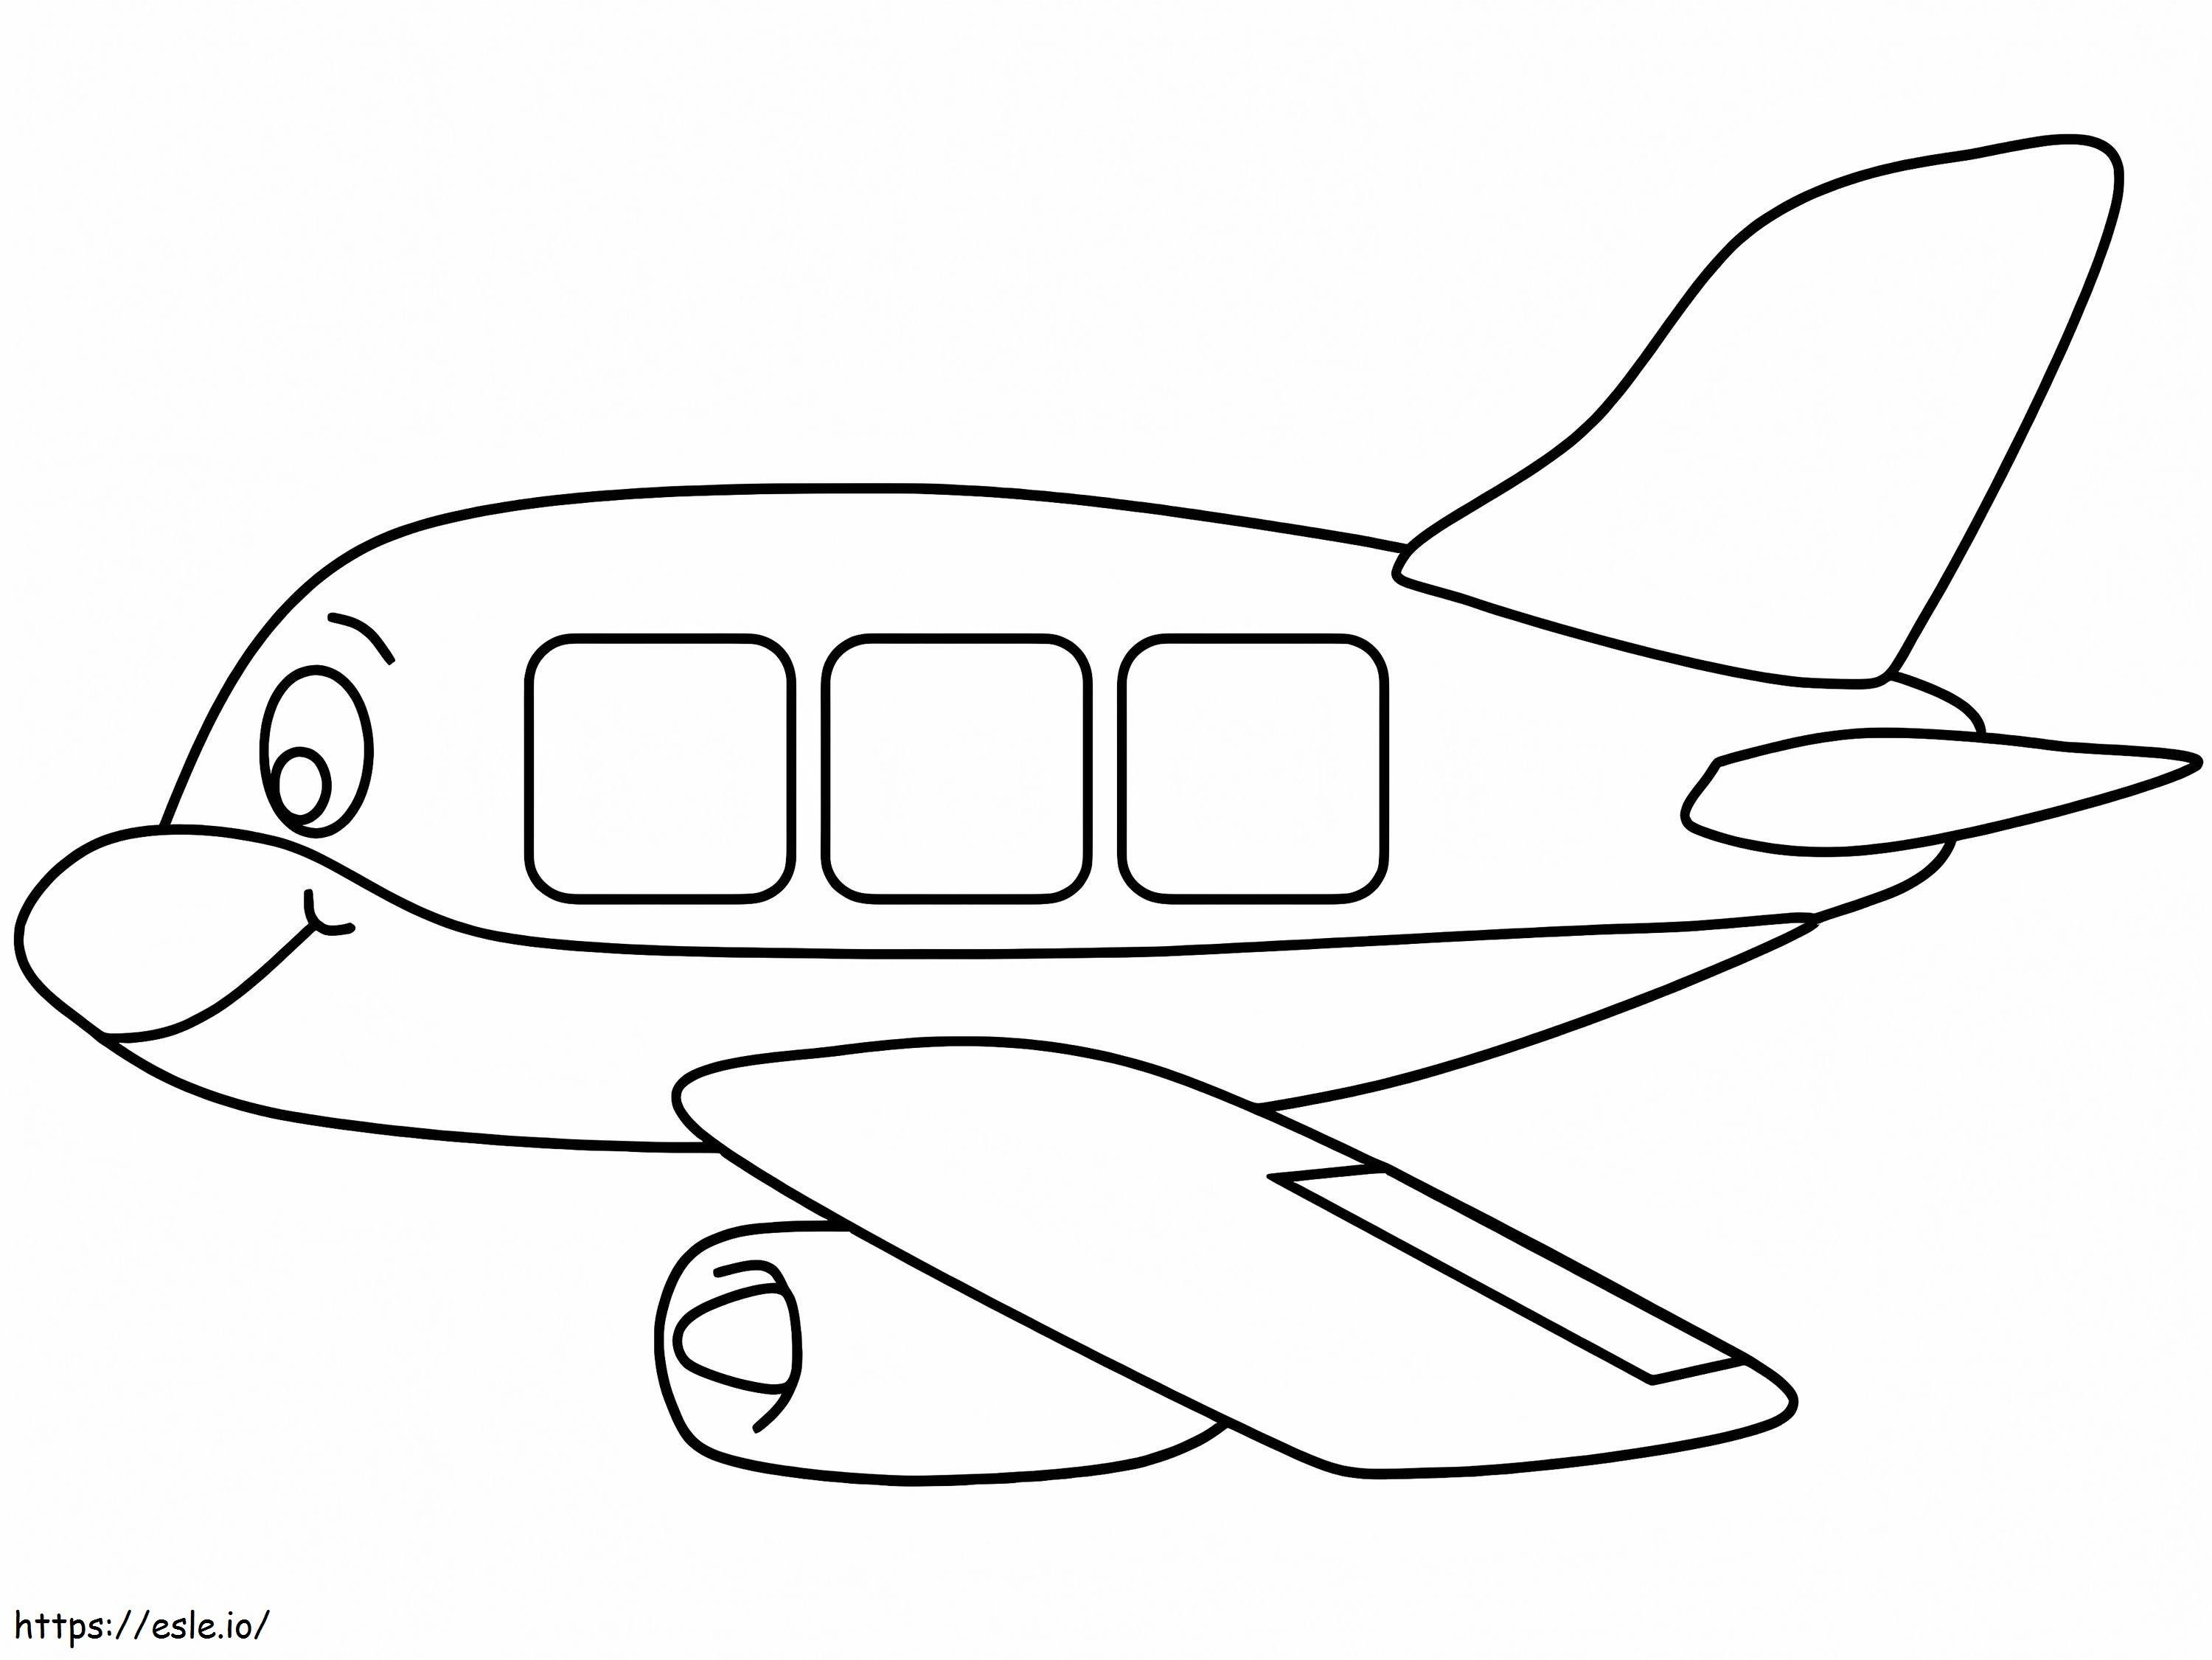 Smiling Aeroplane coloring page